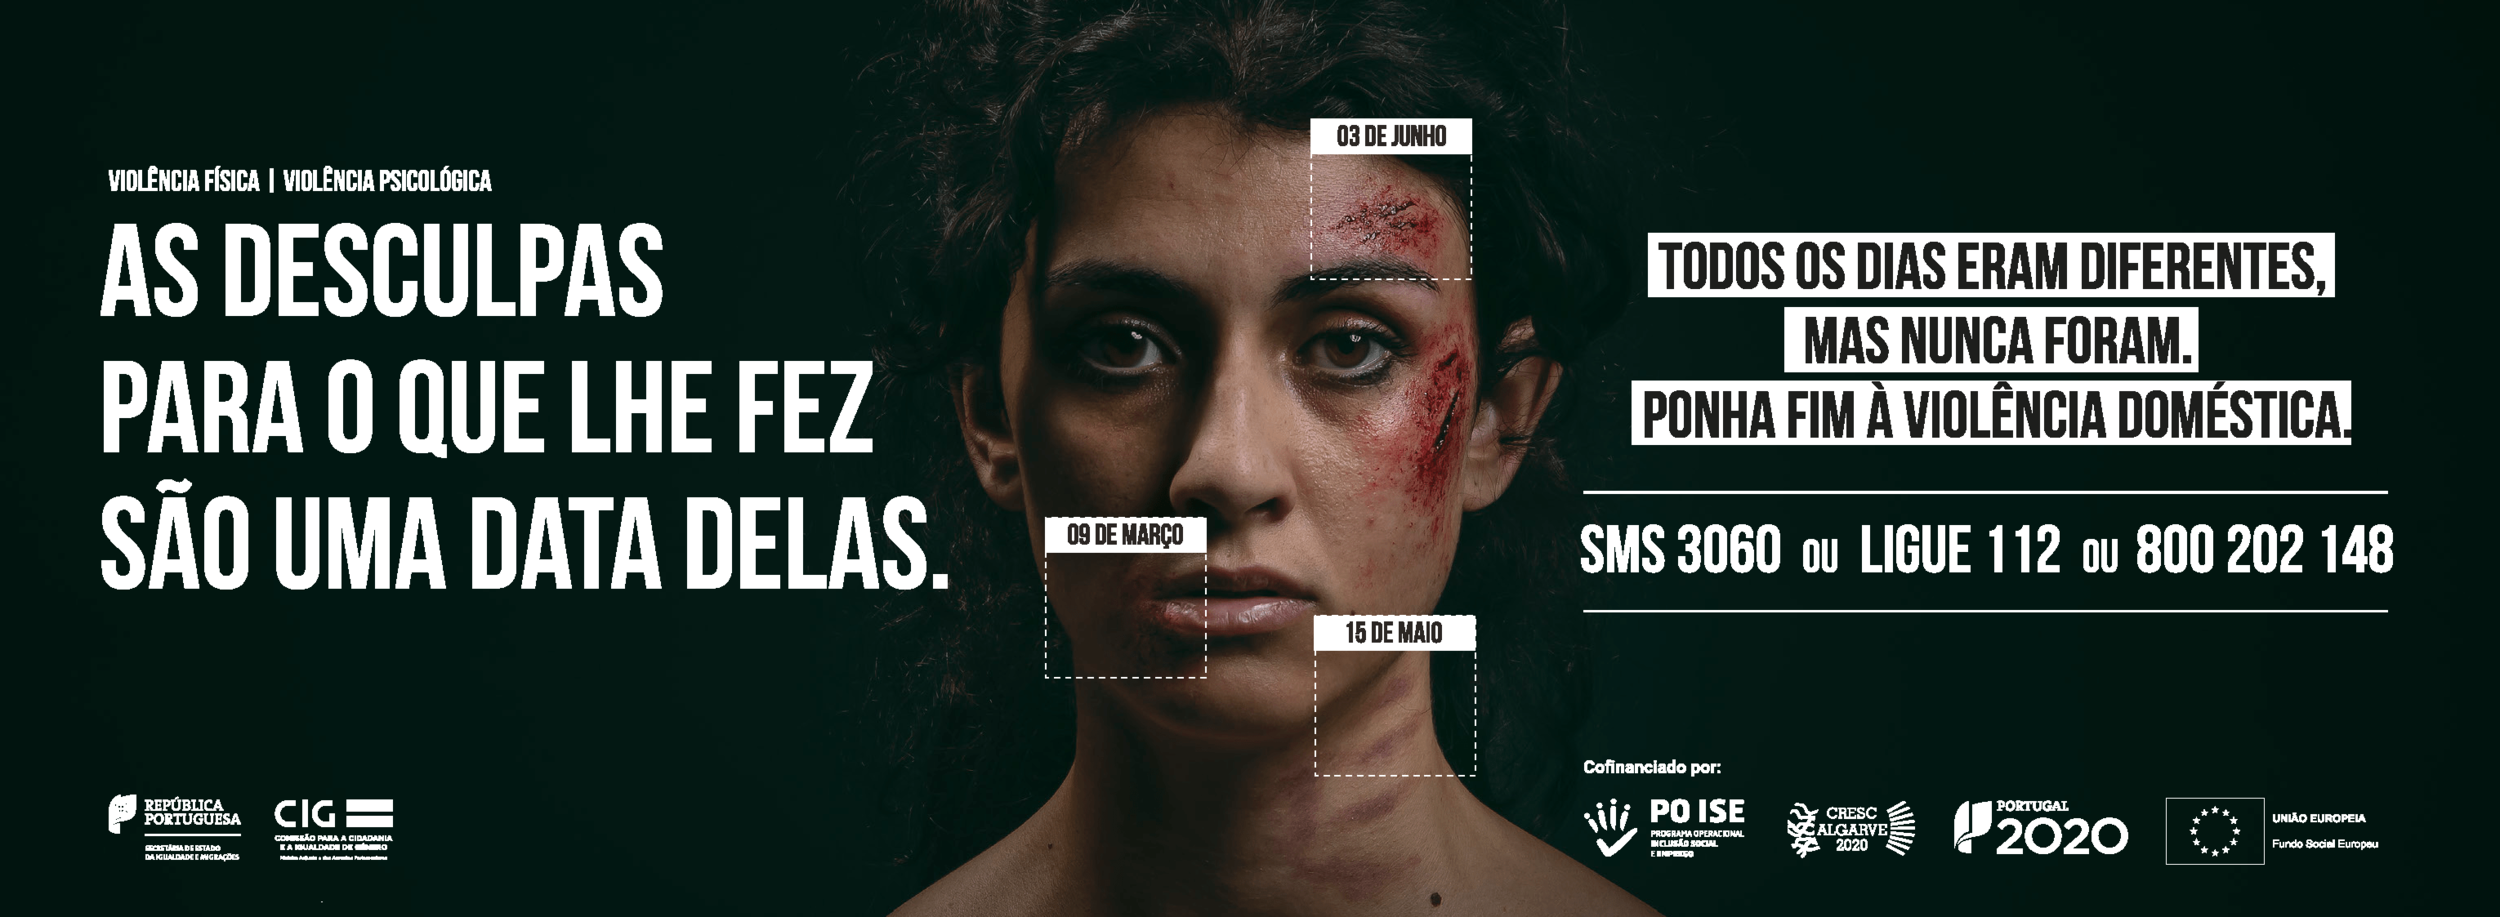 Violência doméstica com nova campanha de sensibilização